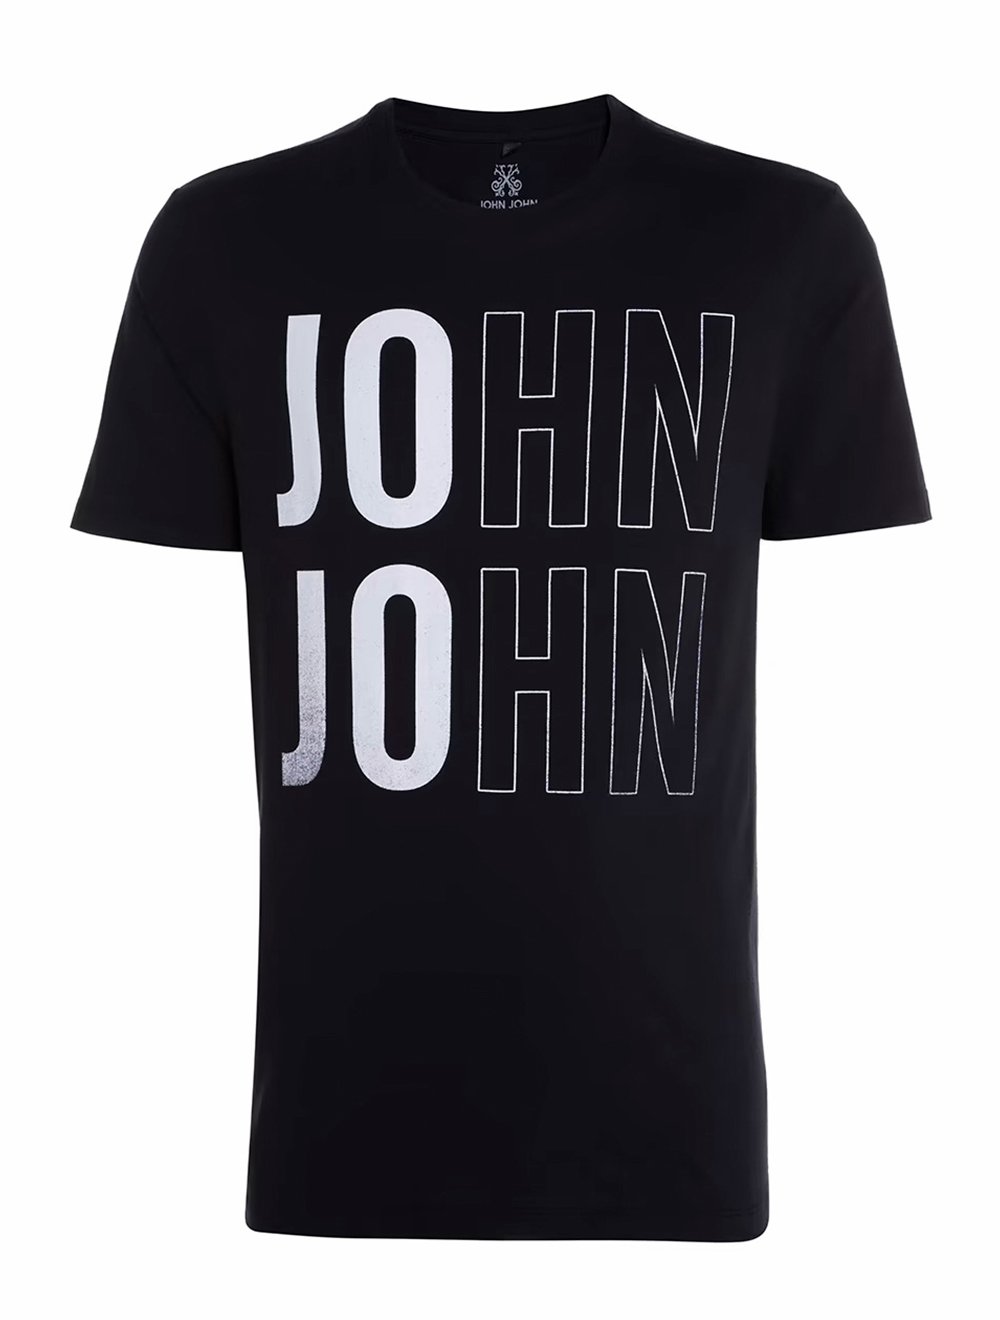 Camiseta John John Caveira Marrom - Compre Agora